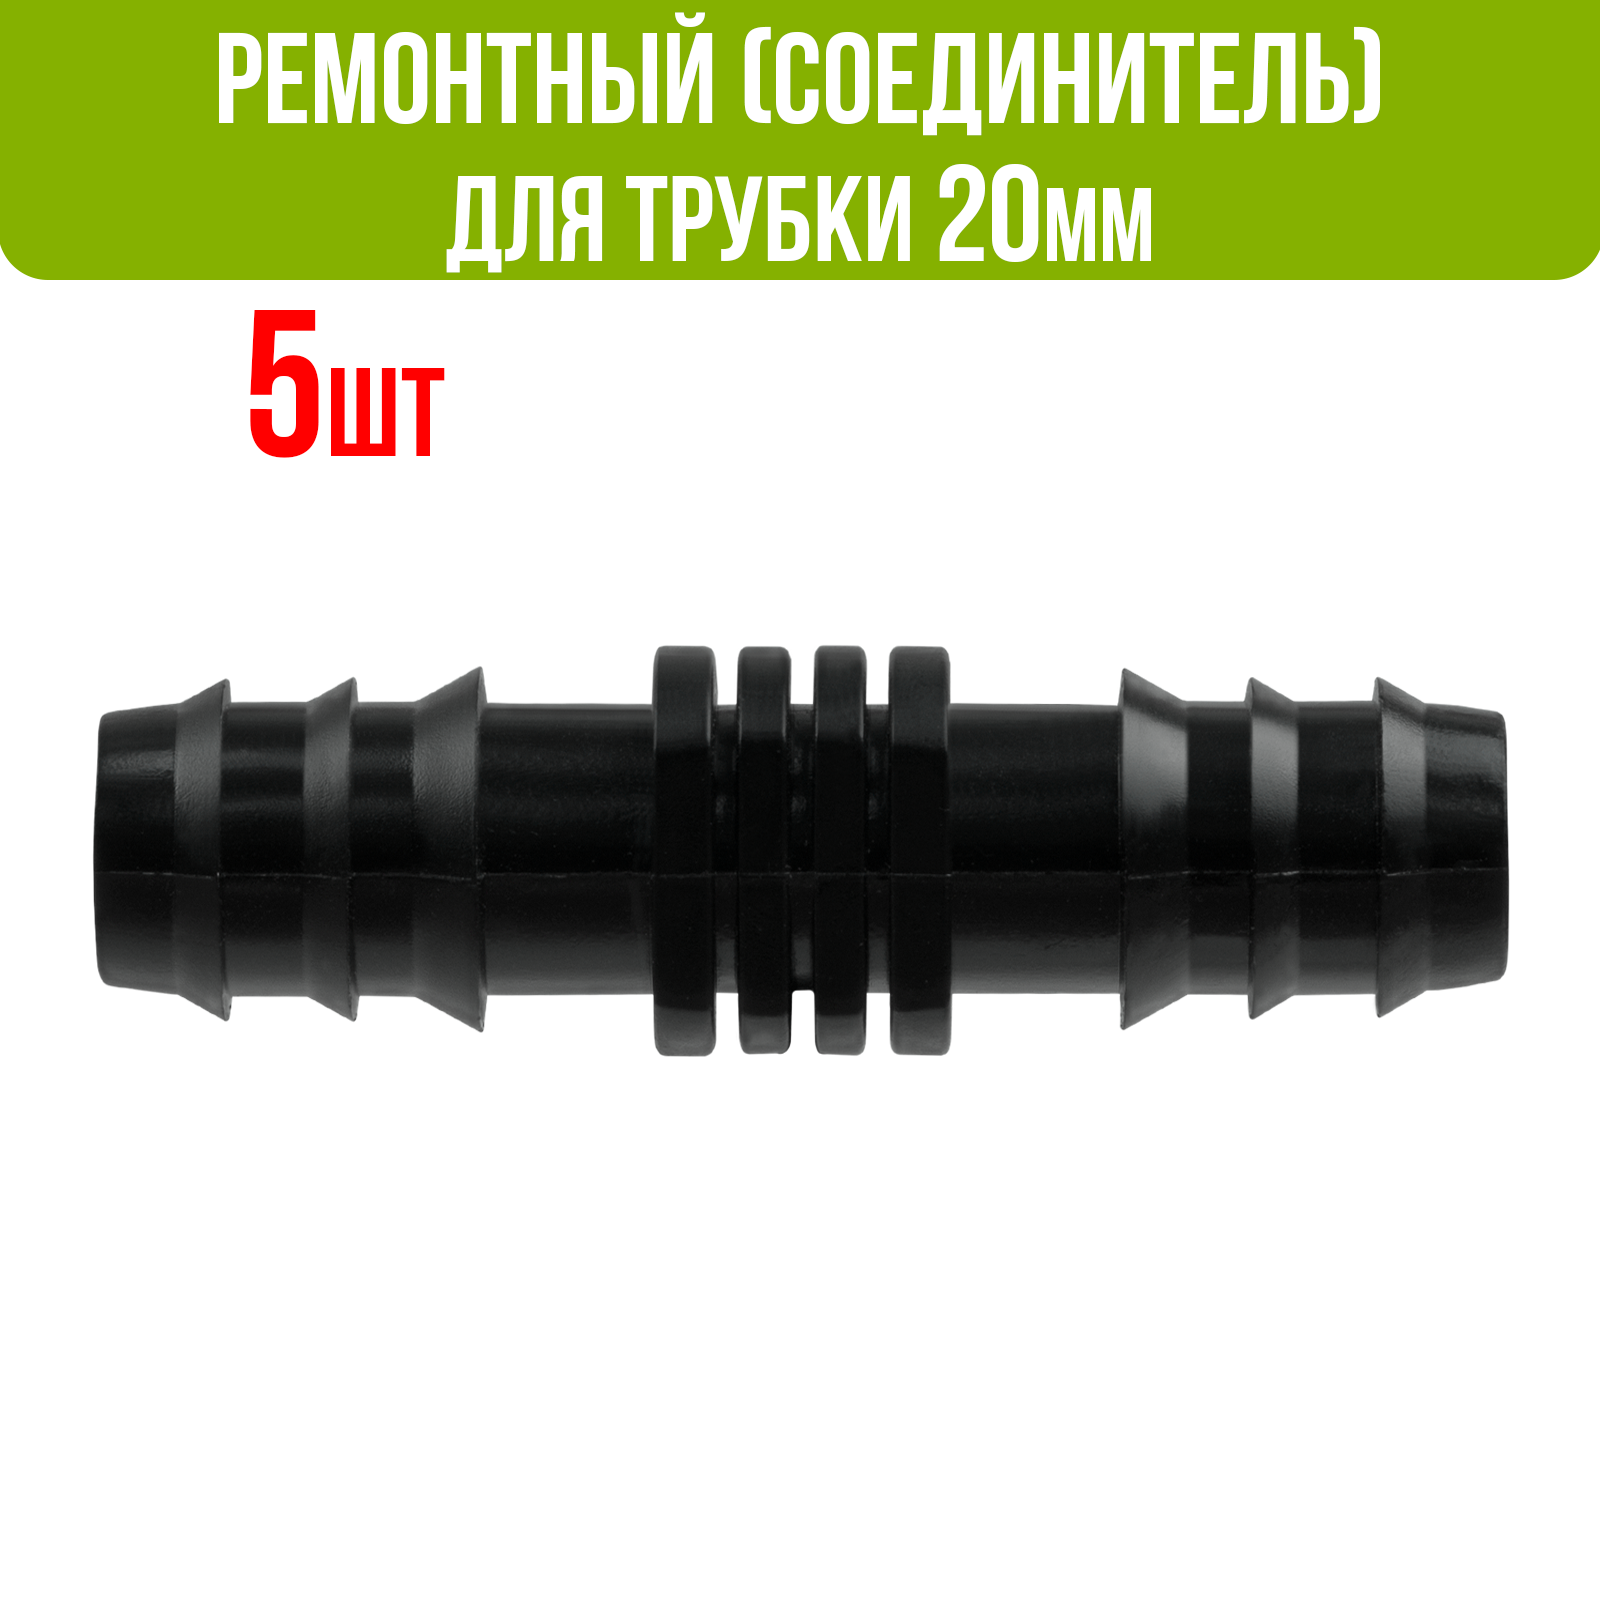 Ремонтный (соединитель) для капельной трубки 20 мм (5 шт)